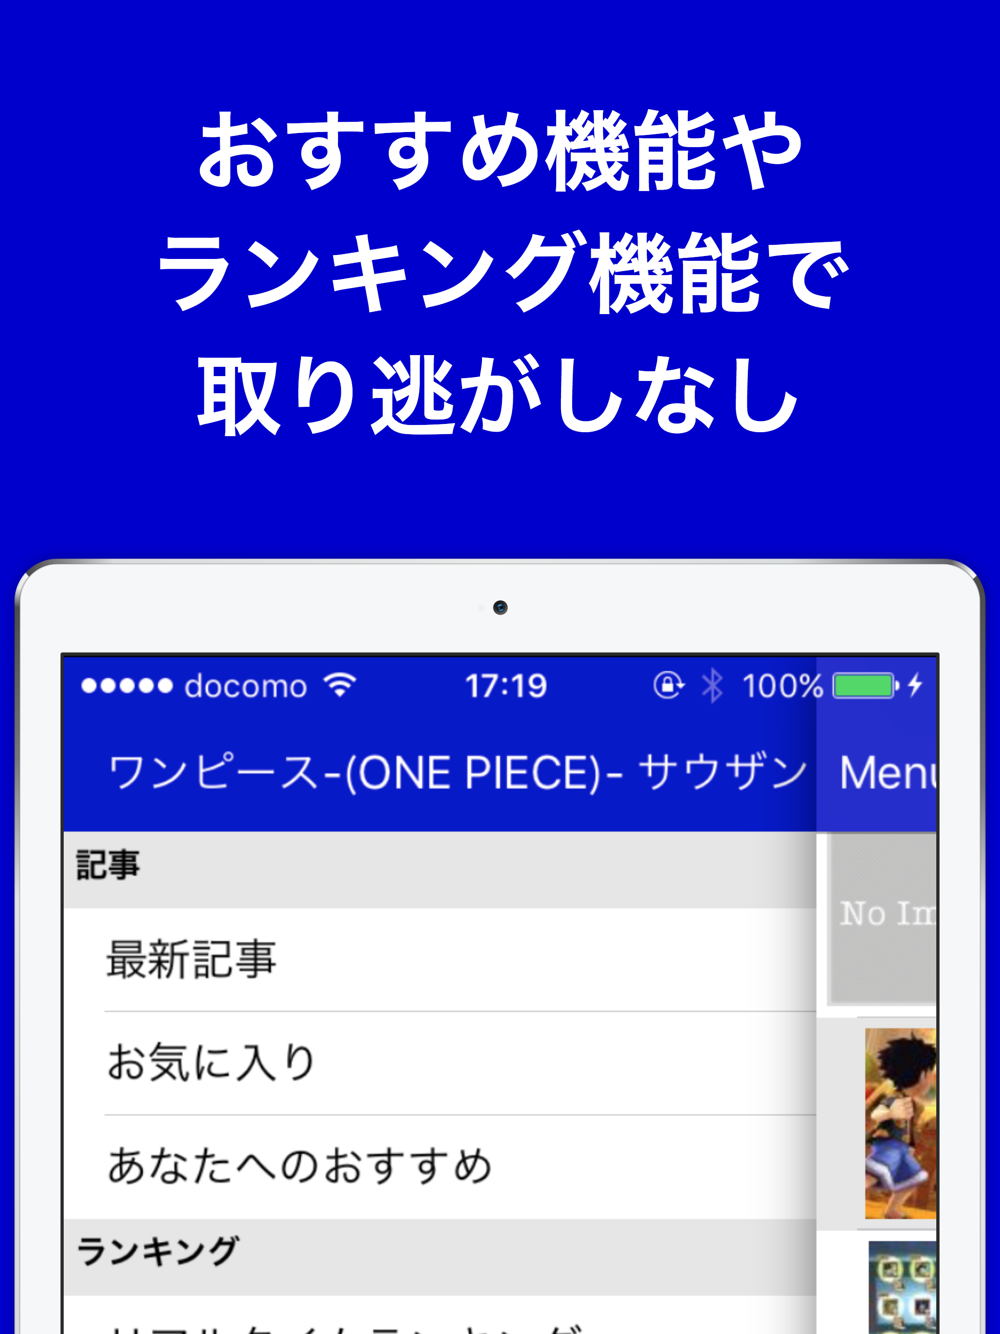 攻略ブログまとめニュース速報 For ワンピース サウザンドストーム Free Download App For Iphone Steprimo Com